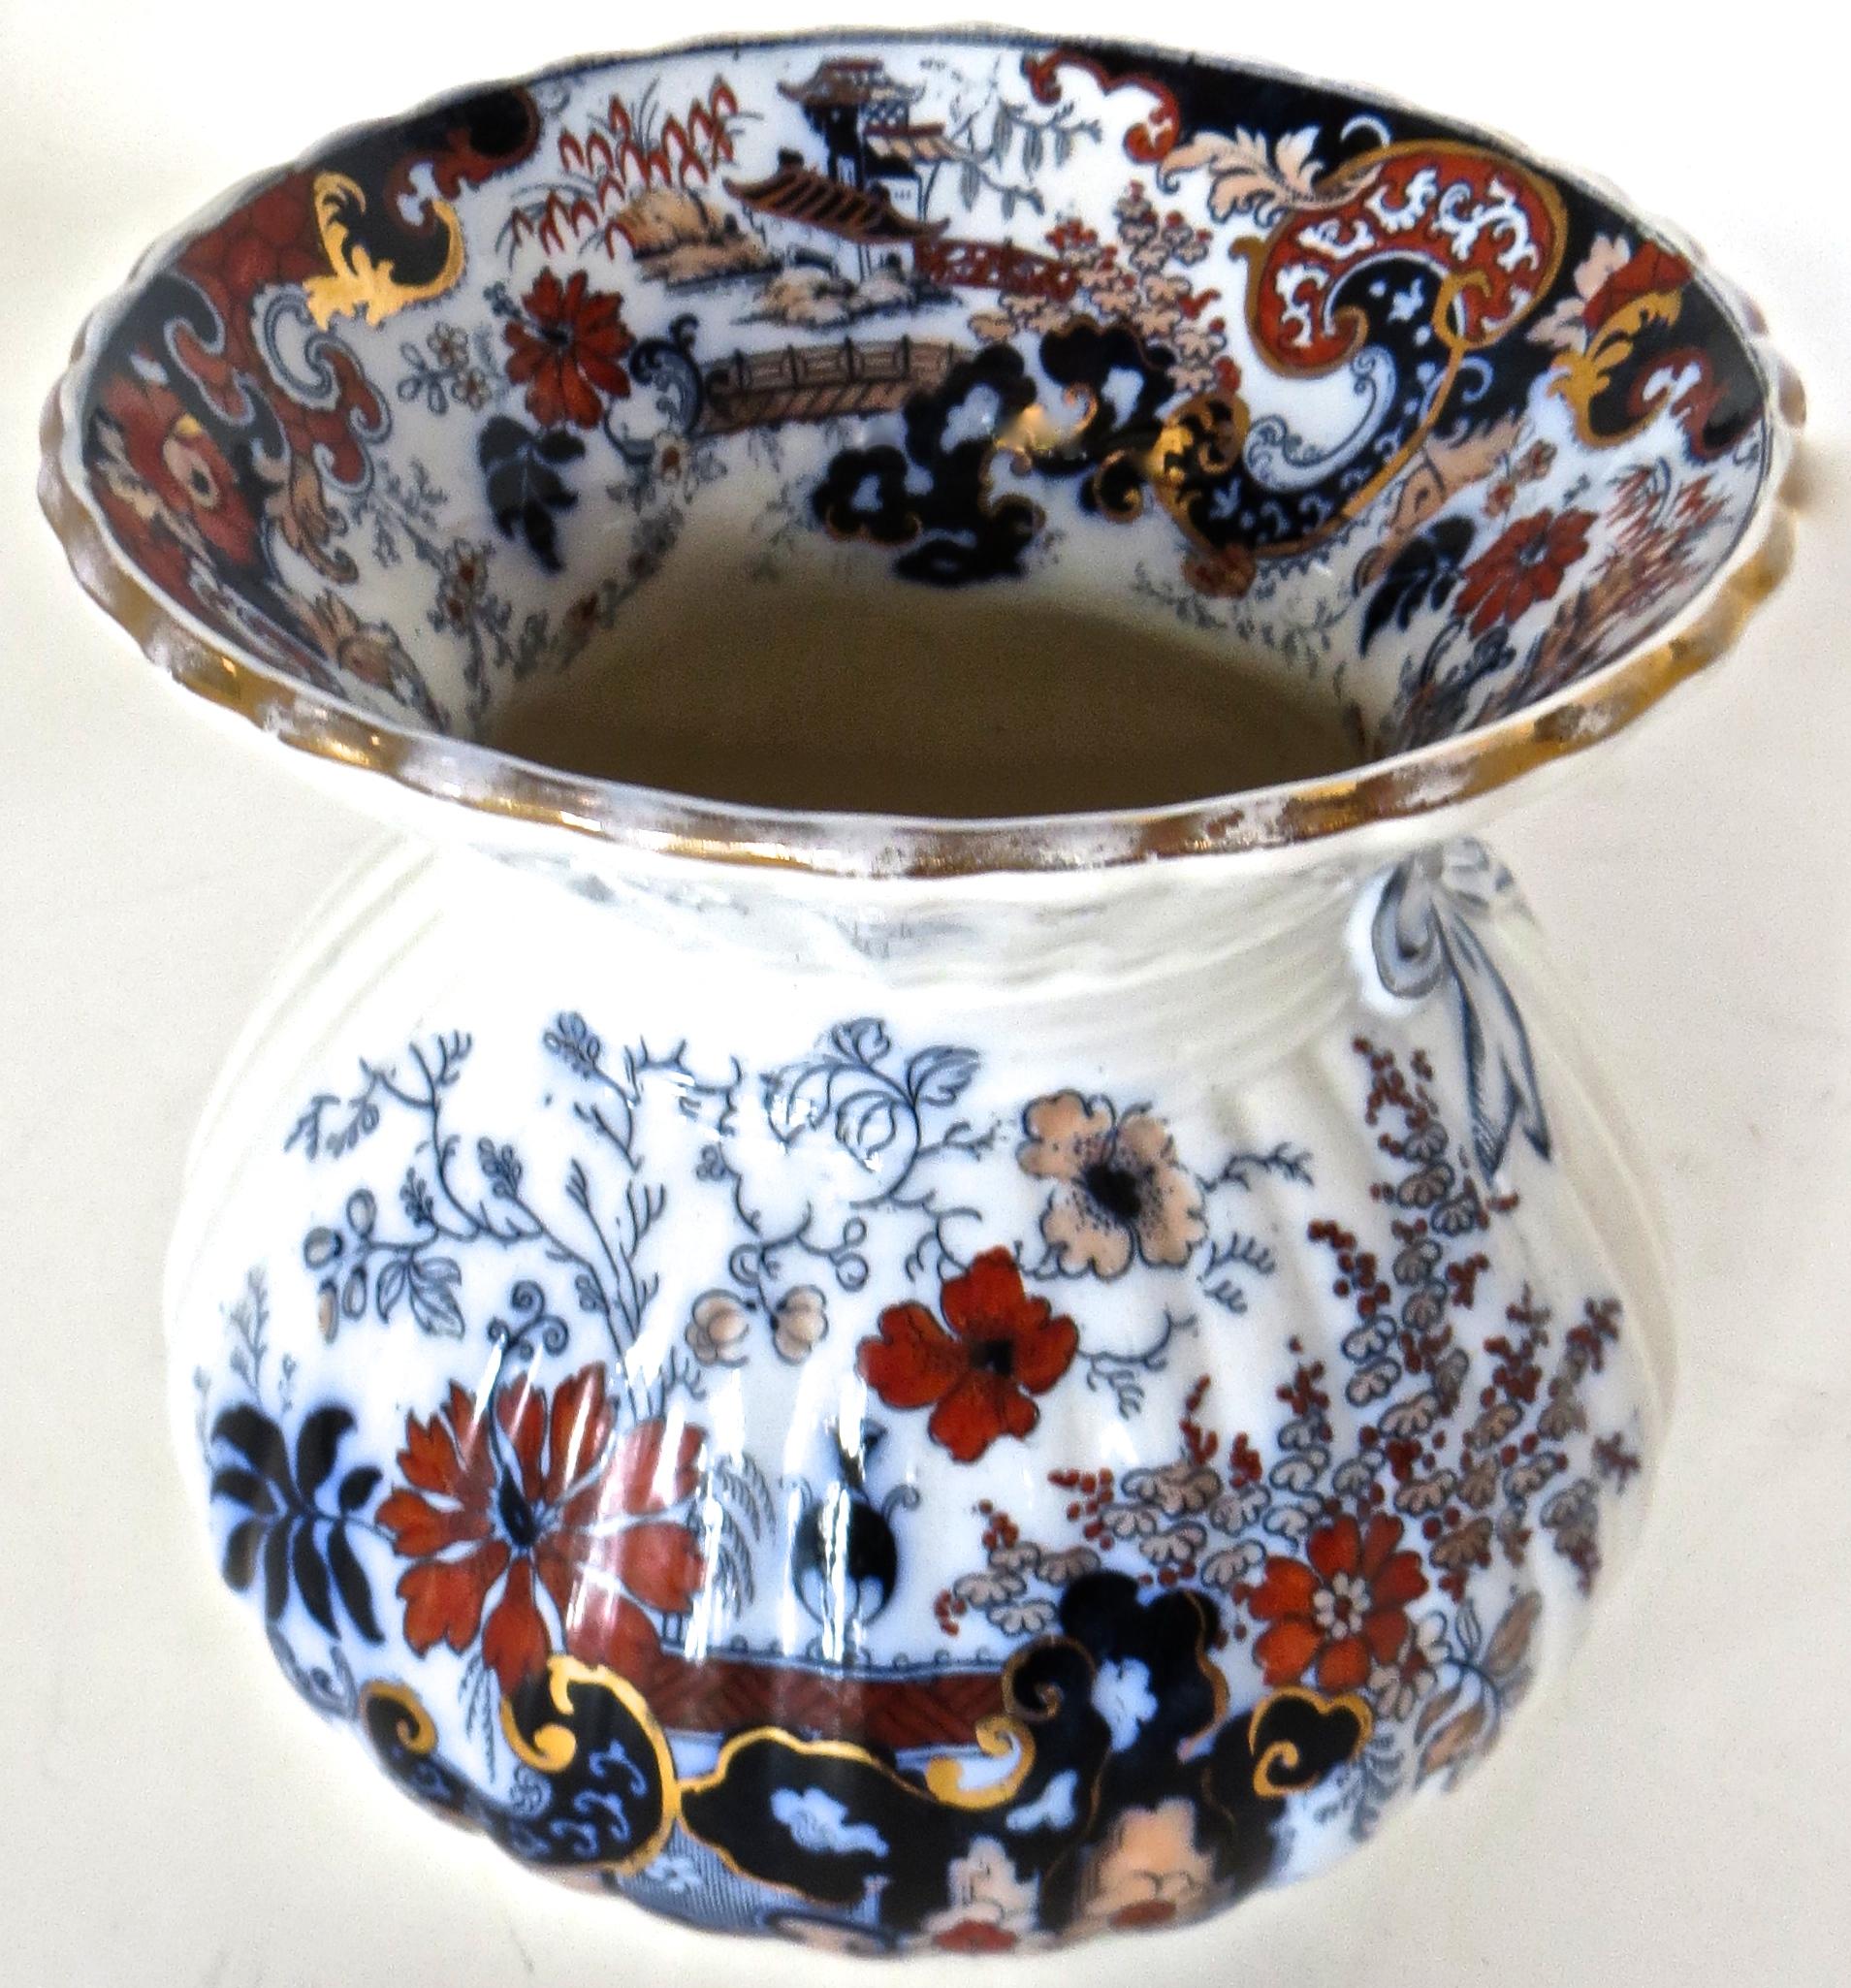 La marque sur le dessous (voir image) indique que ce crachoir est en porcelaine japonaise Imari, fabriquée vers 1880, et réalisée spécifiquement pour le marché américain pour la prépondérance des bars et saloons à cette époque.
Ils ont été